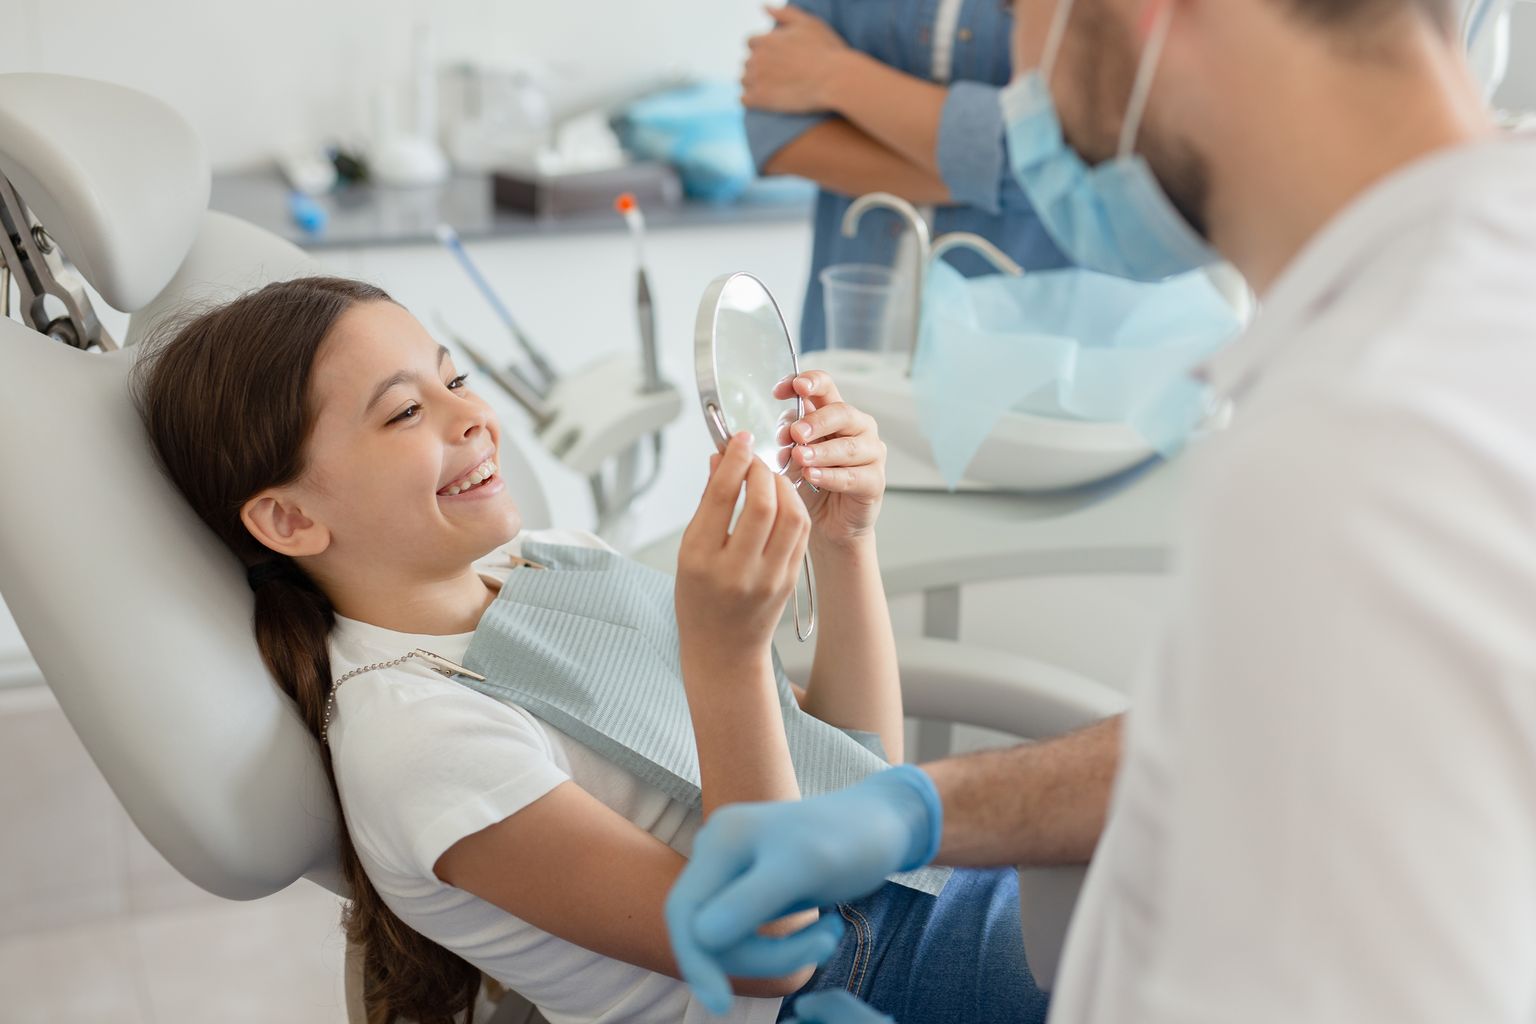 Kõige harvem jõuavad hambaarsti juurde just 15–19-aastased noored.